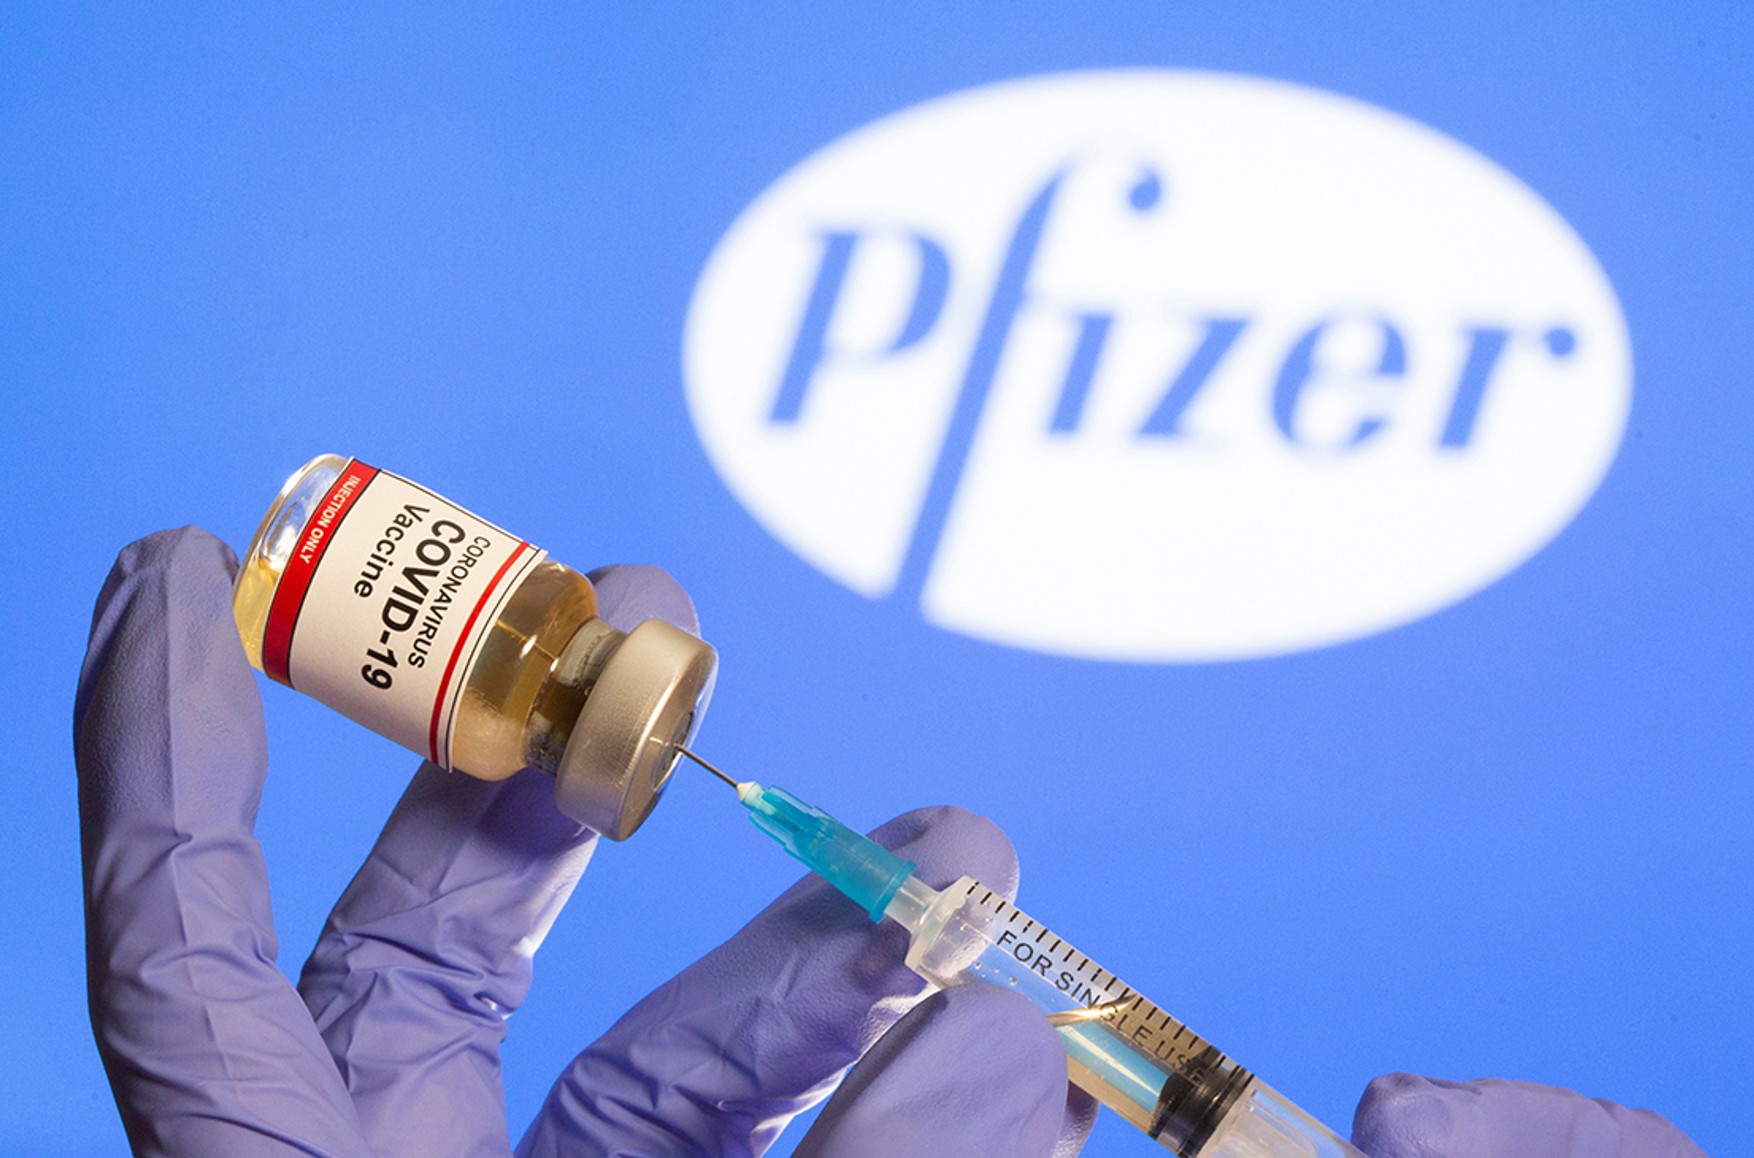 Ізраїль першим в світі оголосив про початок масової вакцинації третьої дозою Pfizer